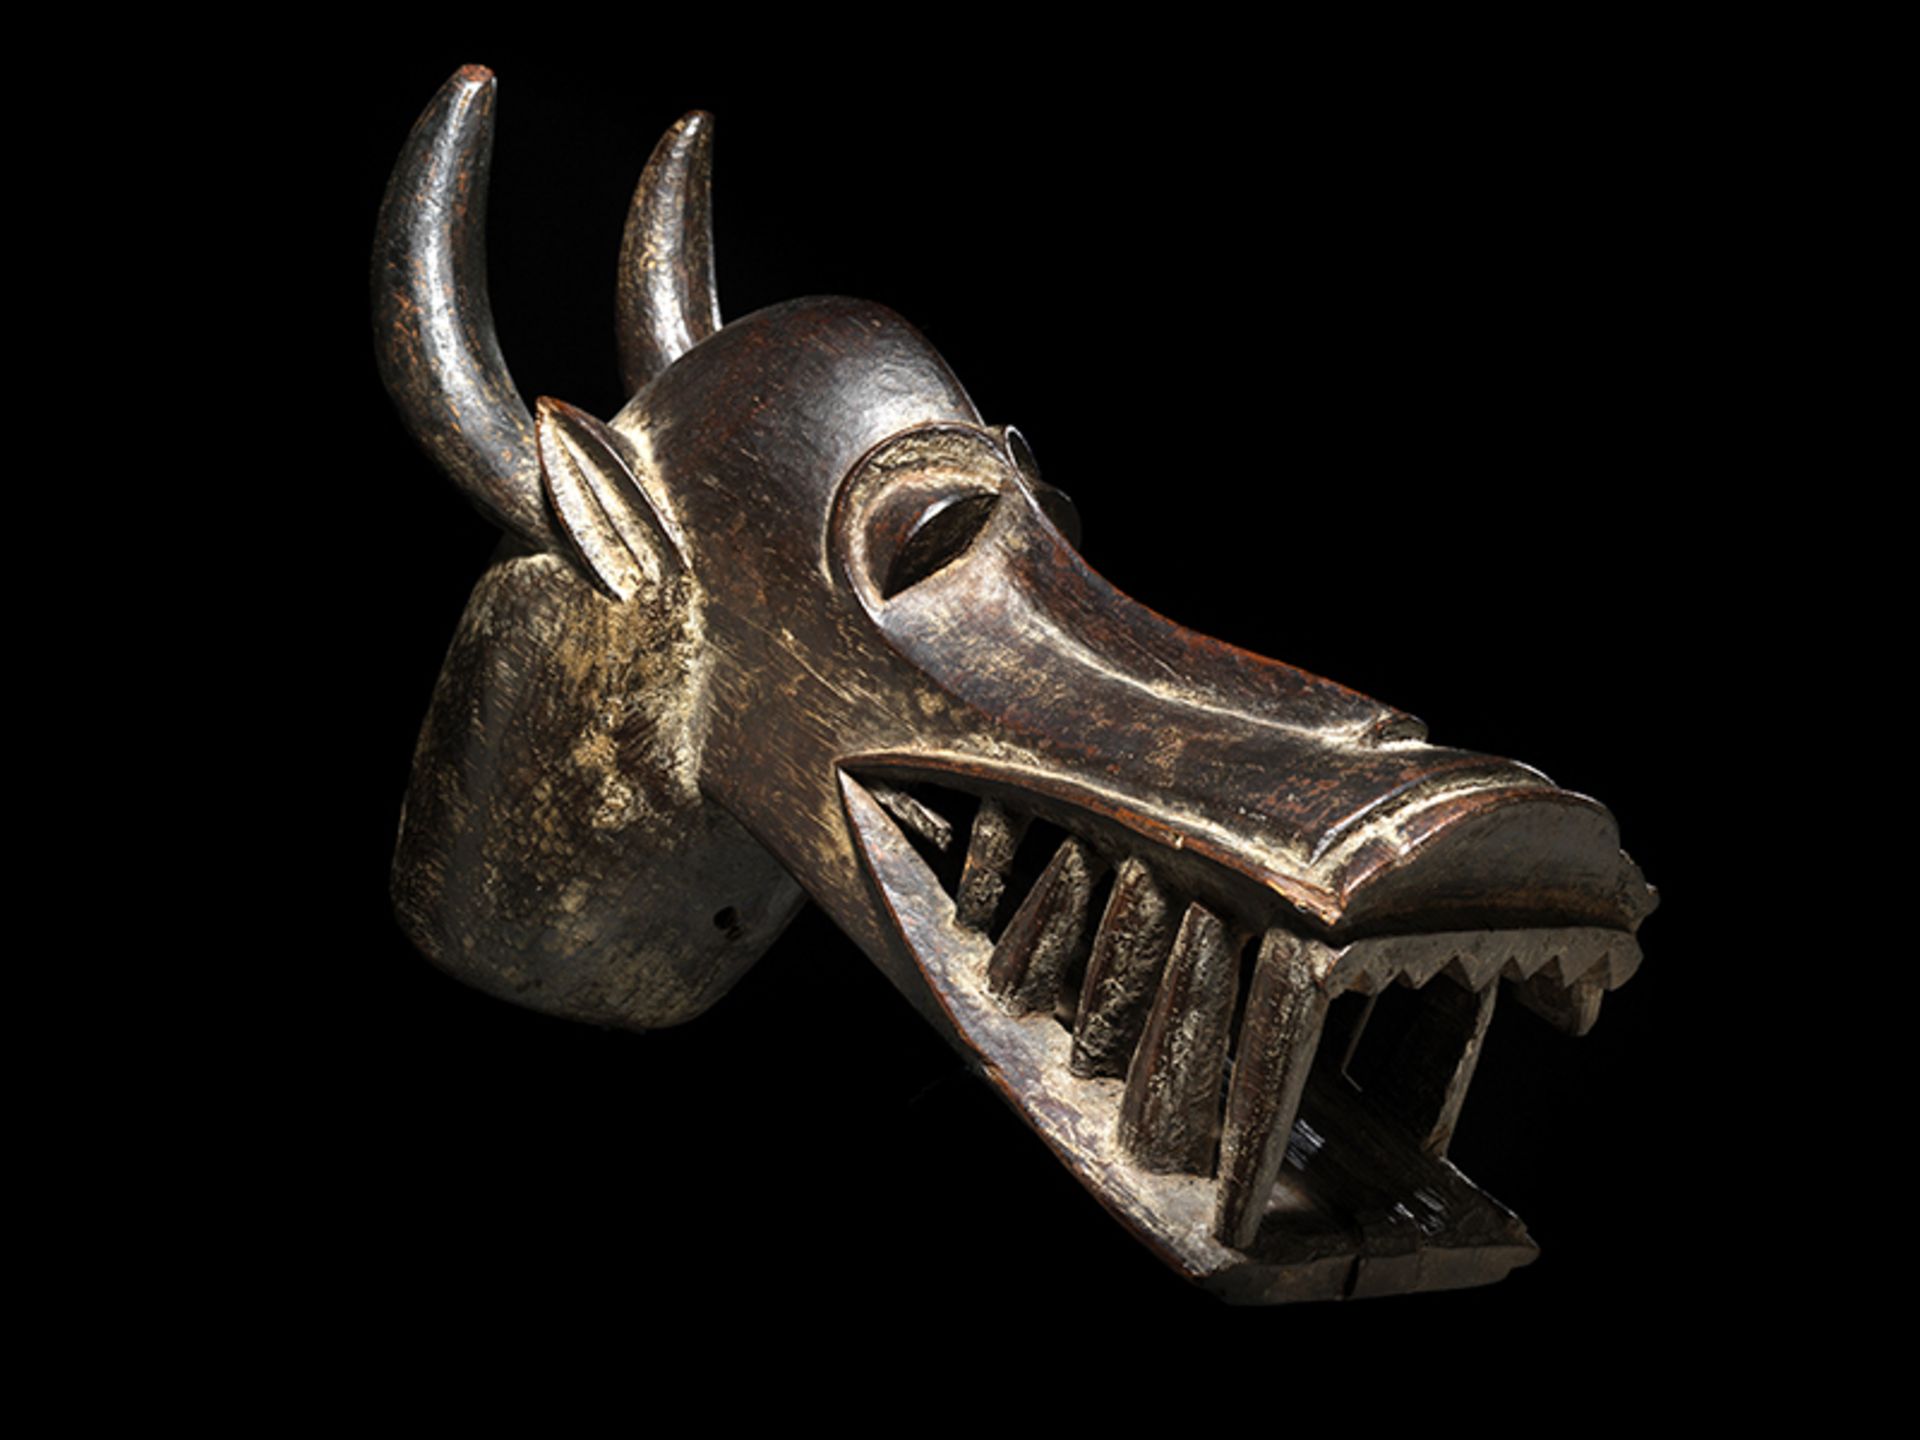 Kponyungo-Maske Höhe inkl. Stand: 37,7 cm. Volk der Senufo, Elfenbeinküste. Die Maske wurde getragen